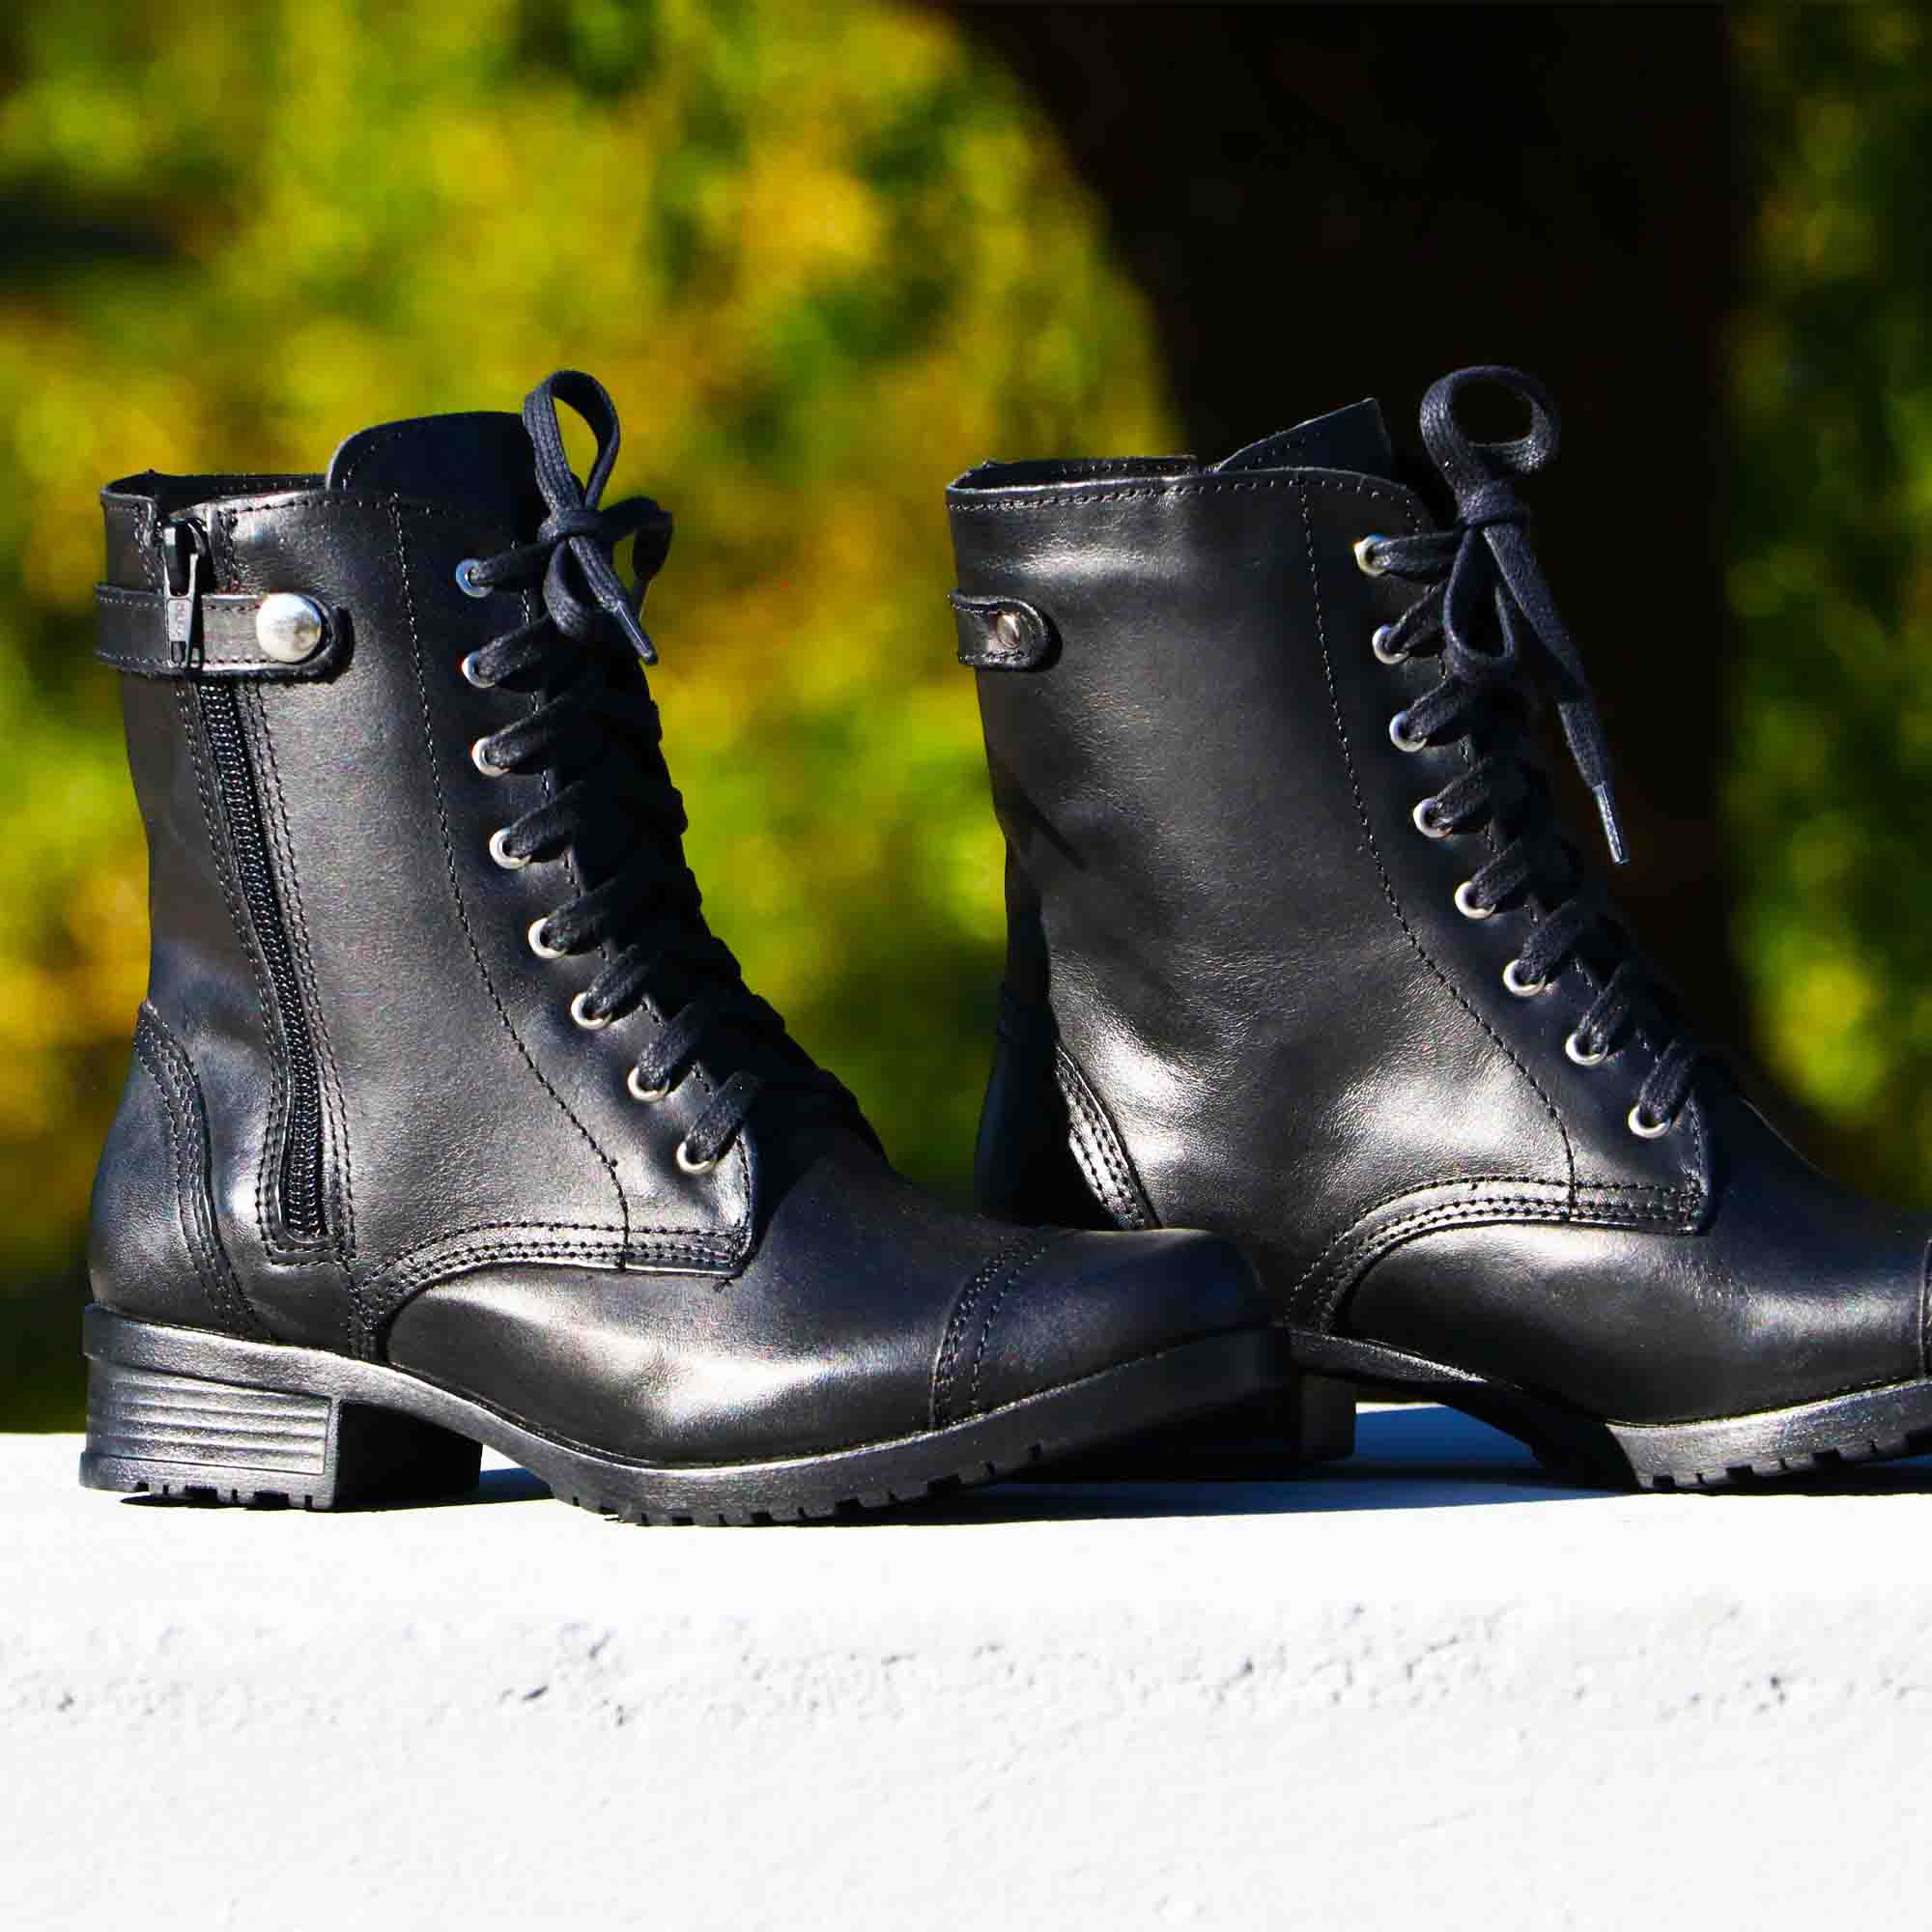 Coturno  cano médio feminino Atron Shoes de couro legítimo na cor preta 7080